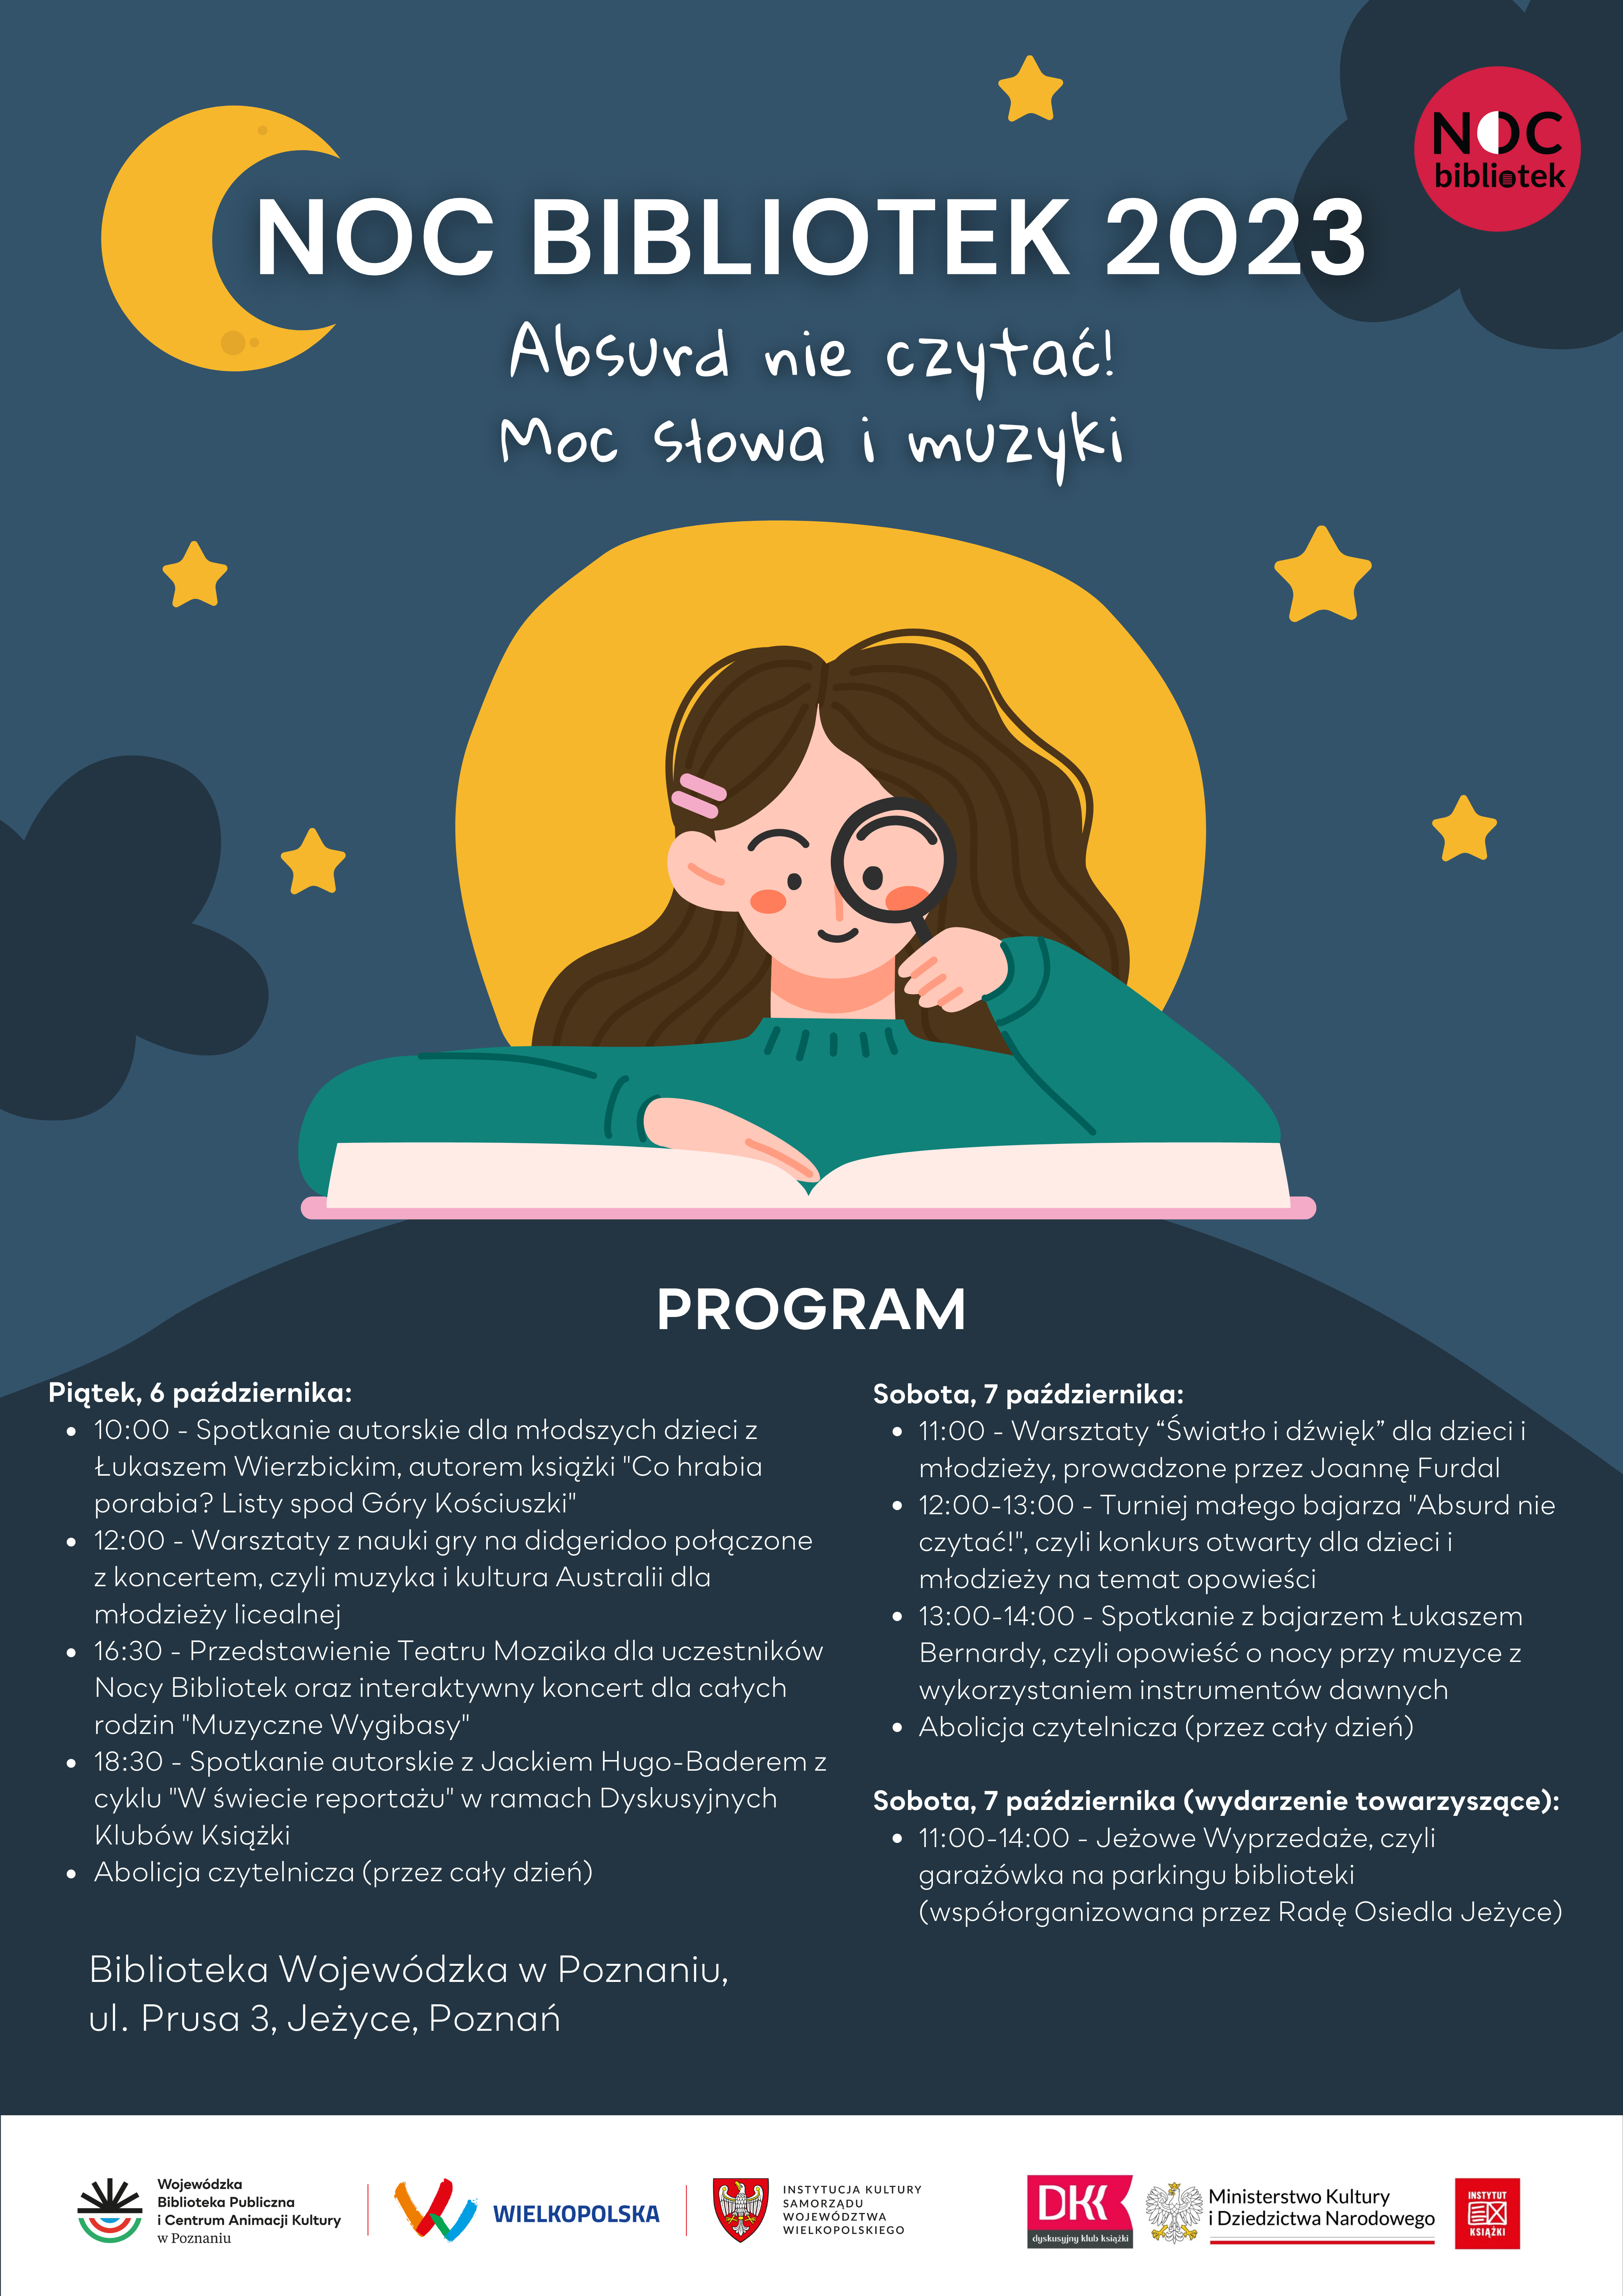 Plakat promujący wydarzenie Noc Bibliotek 2023, grafika przedstawia dziewczynkę czytającą książkę, tekst jak w artykule